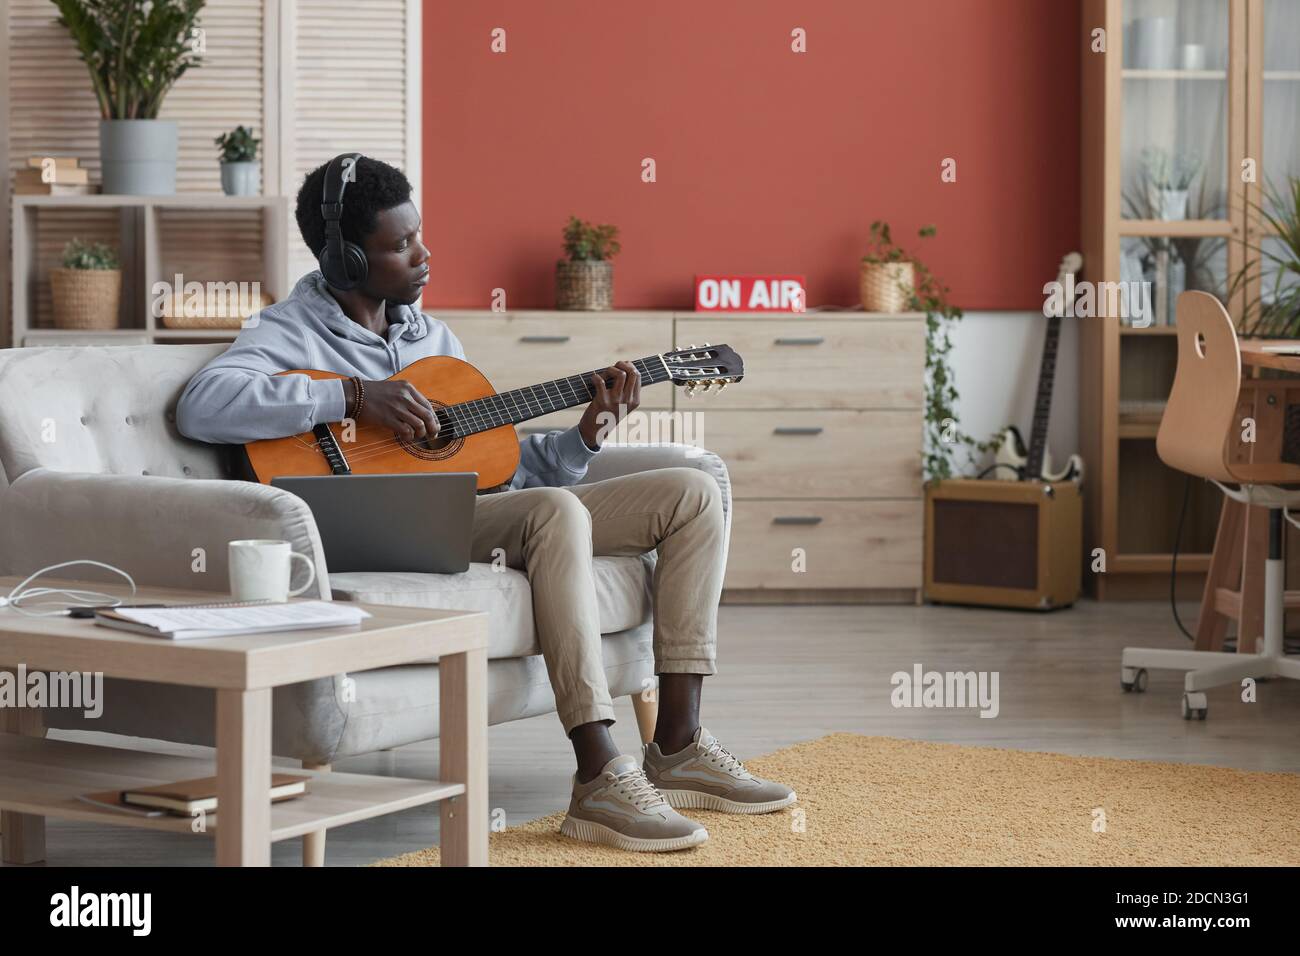 Ganzkörperportrait des jungen afroamerikanischen Mannes, der akustische Gitarre spielt, während er auf der Couch sitzt und zu Hause Musik macht, Raum kopieren Stockfoto